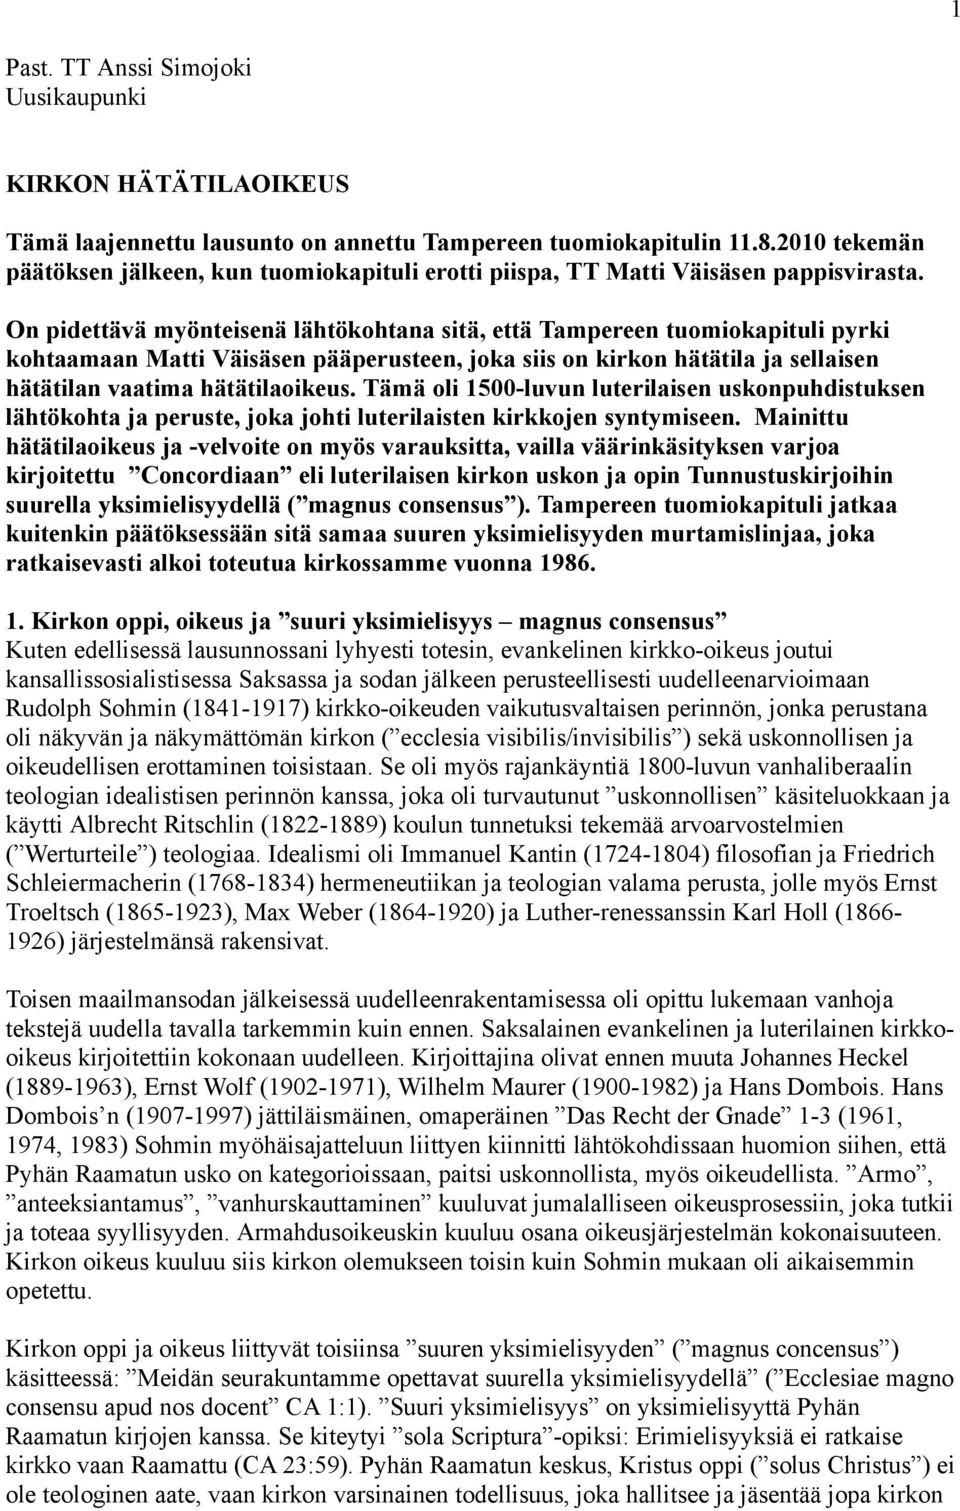 On pidettävä myönteisenä lähtökohtana sitä, että Tampereen tuomiokapituli pyrki kohtaamaan Matti Väisäsen pääperusteen, joka siis on kirkon hätätila ja sellaisen hätätilan vaatima hätätilaoikeus.